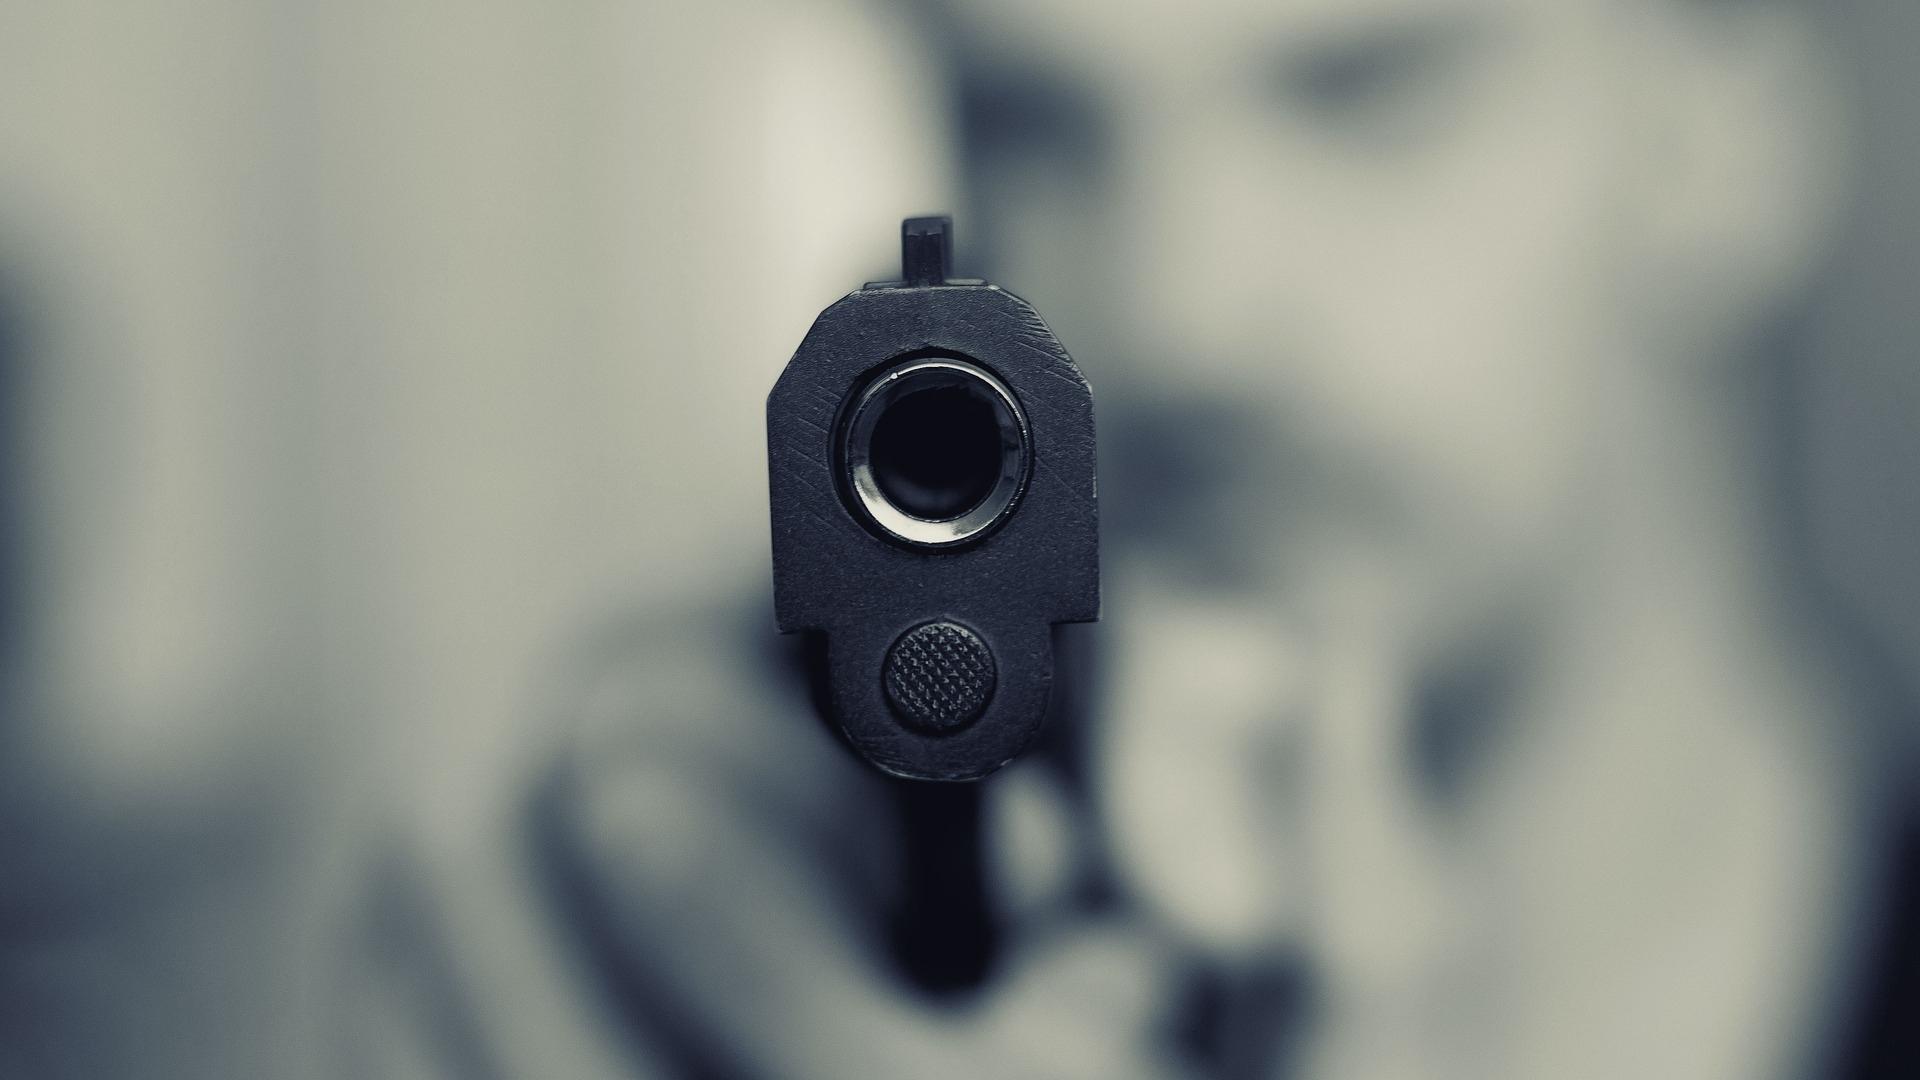 Hombre apunta con pistola. Foto: Imagen de referencia tomada de Pixabay